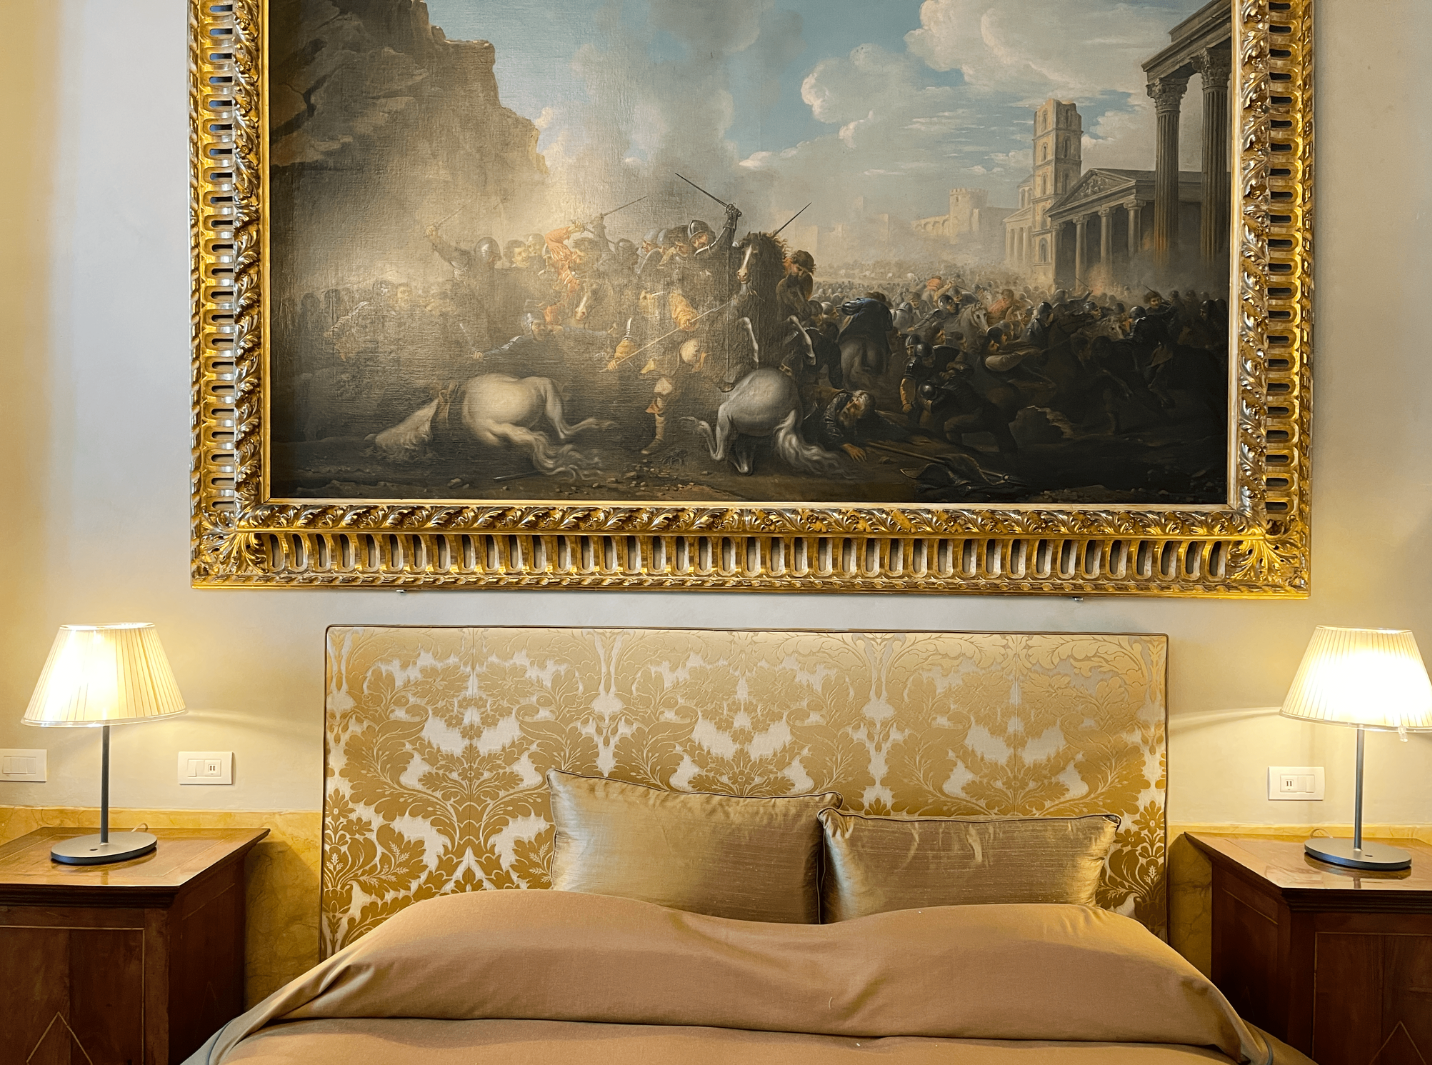 Ansicht eines Hotelzimmers und einem Bett, daneben zwei Nachtische mit Lampen und über dem Bild hängt ein großes Gemälde, fast alles im Bildausschnitt ist goldfarben